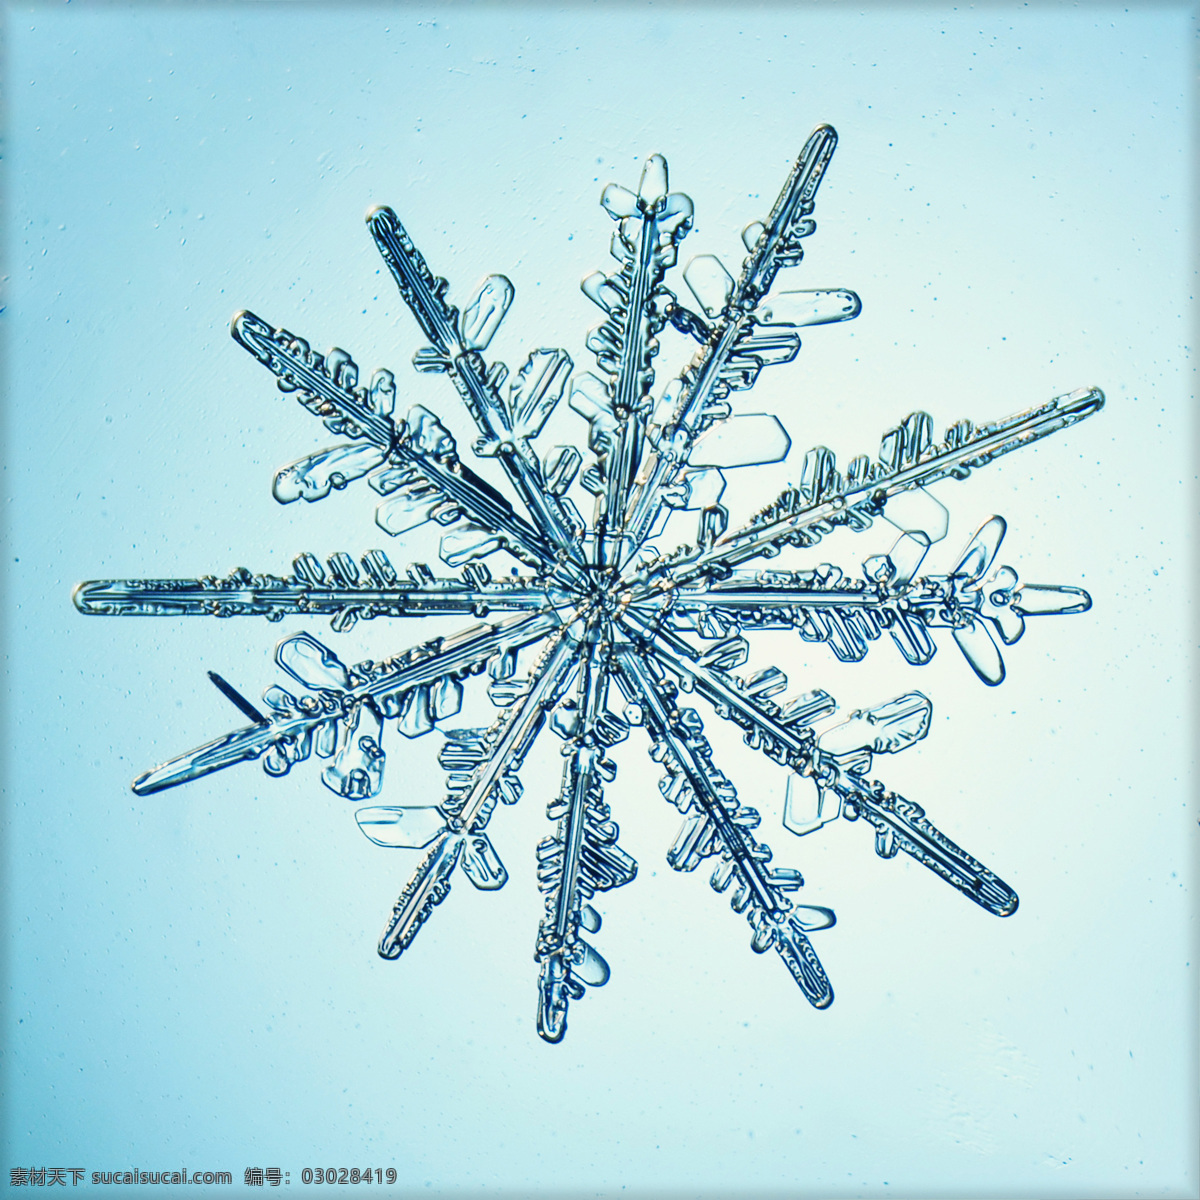 晶莹剔透 冰晶 雪花 蓝色背景 其他生物 生物世界